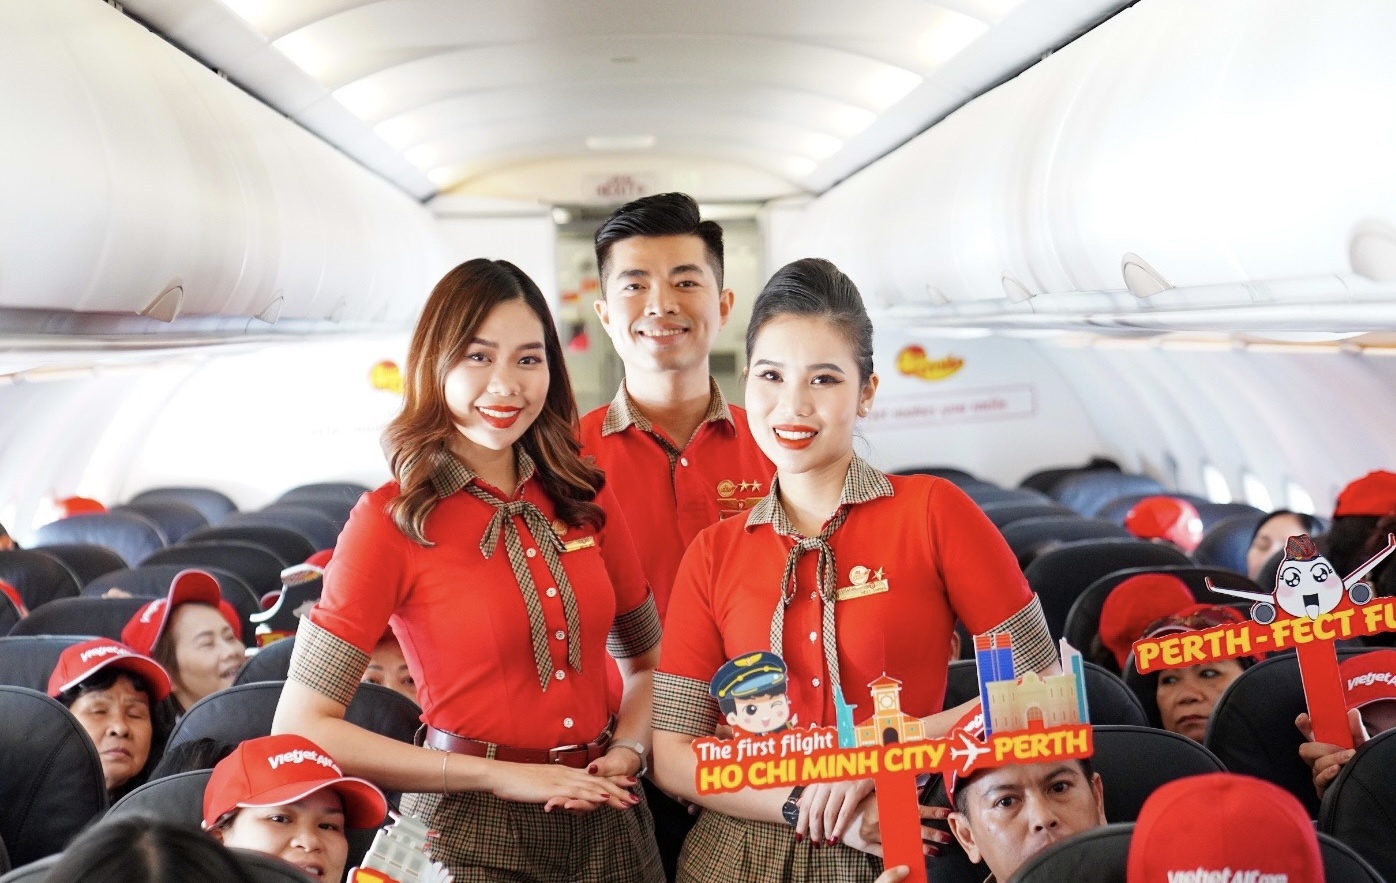 Phi hành đoàn Vietjet trên hành trình kết nối Việt Nam với Perth, Adelaide/